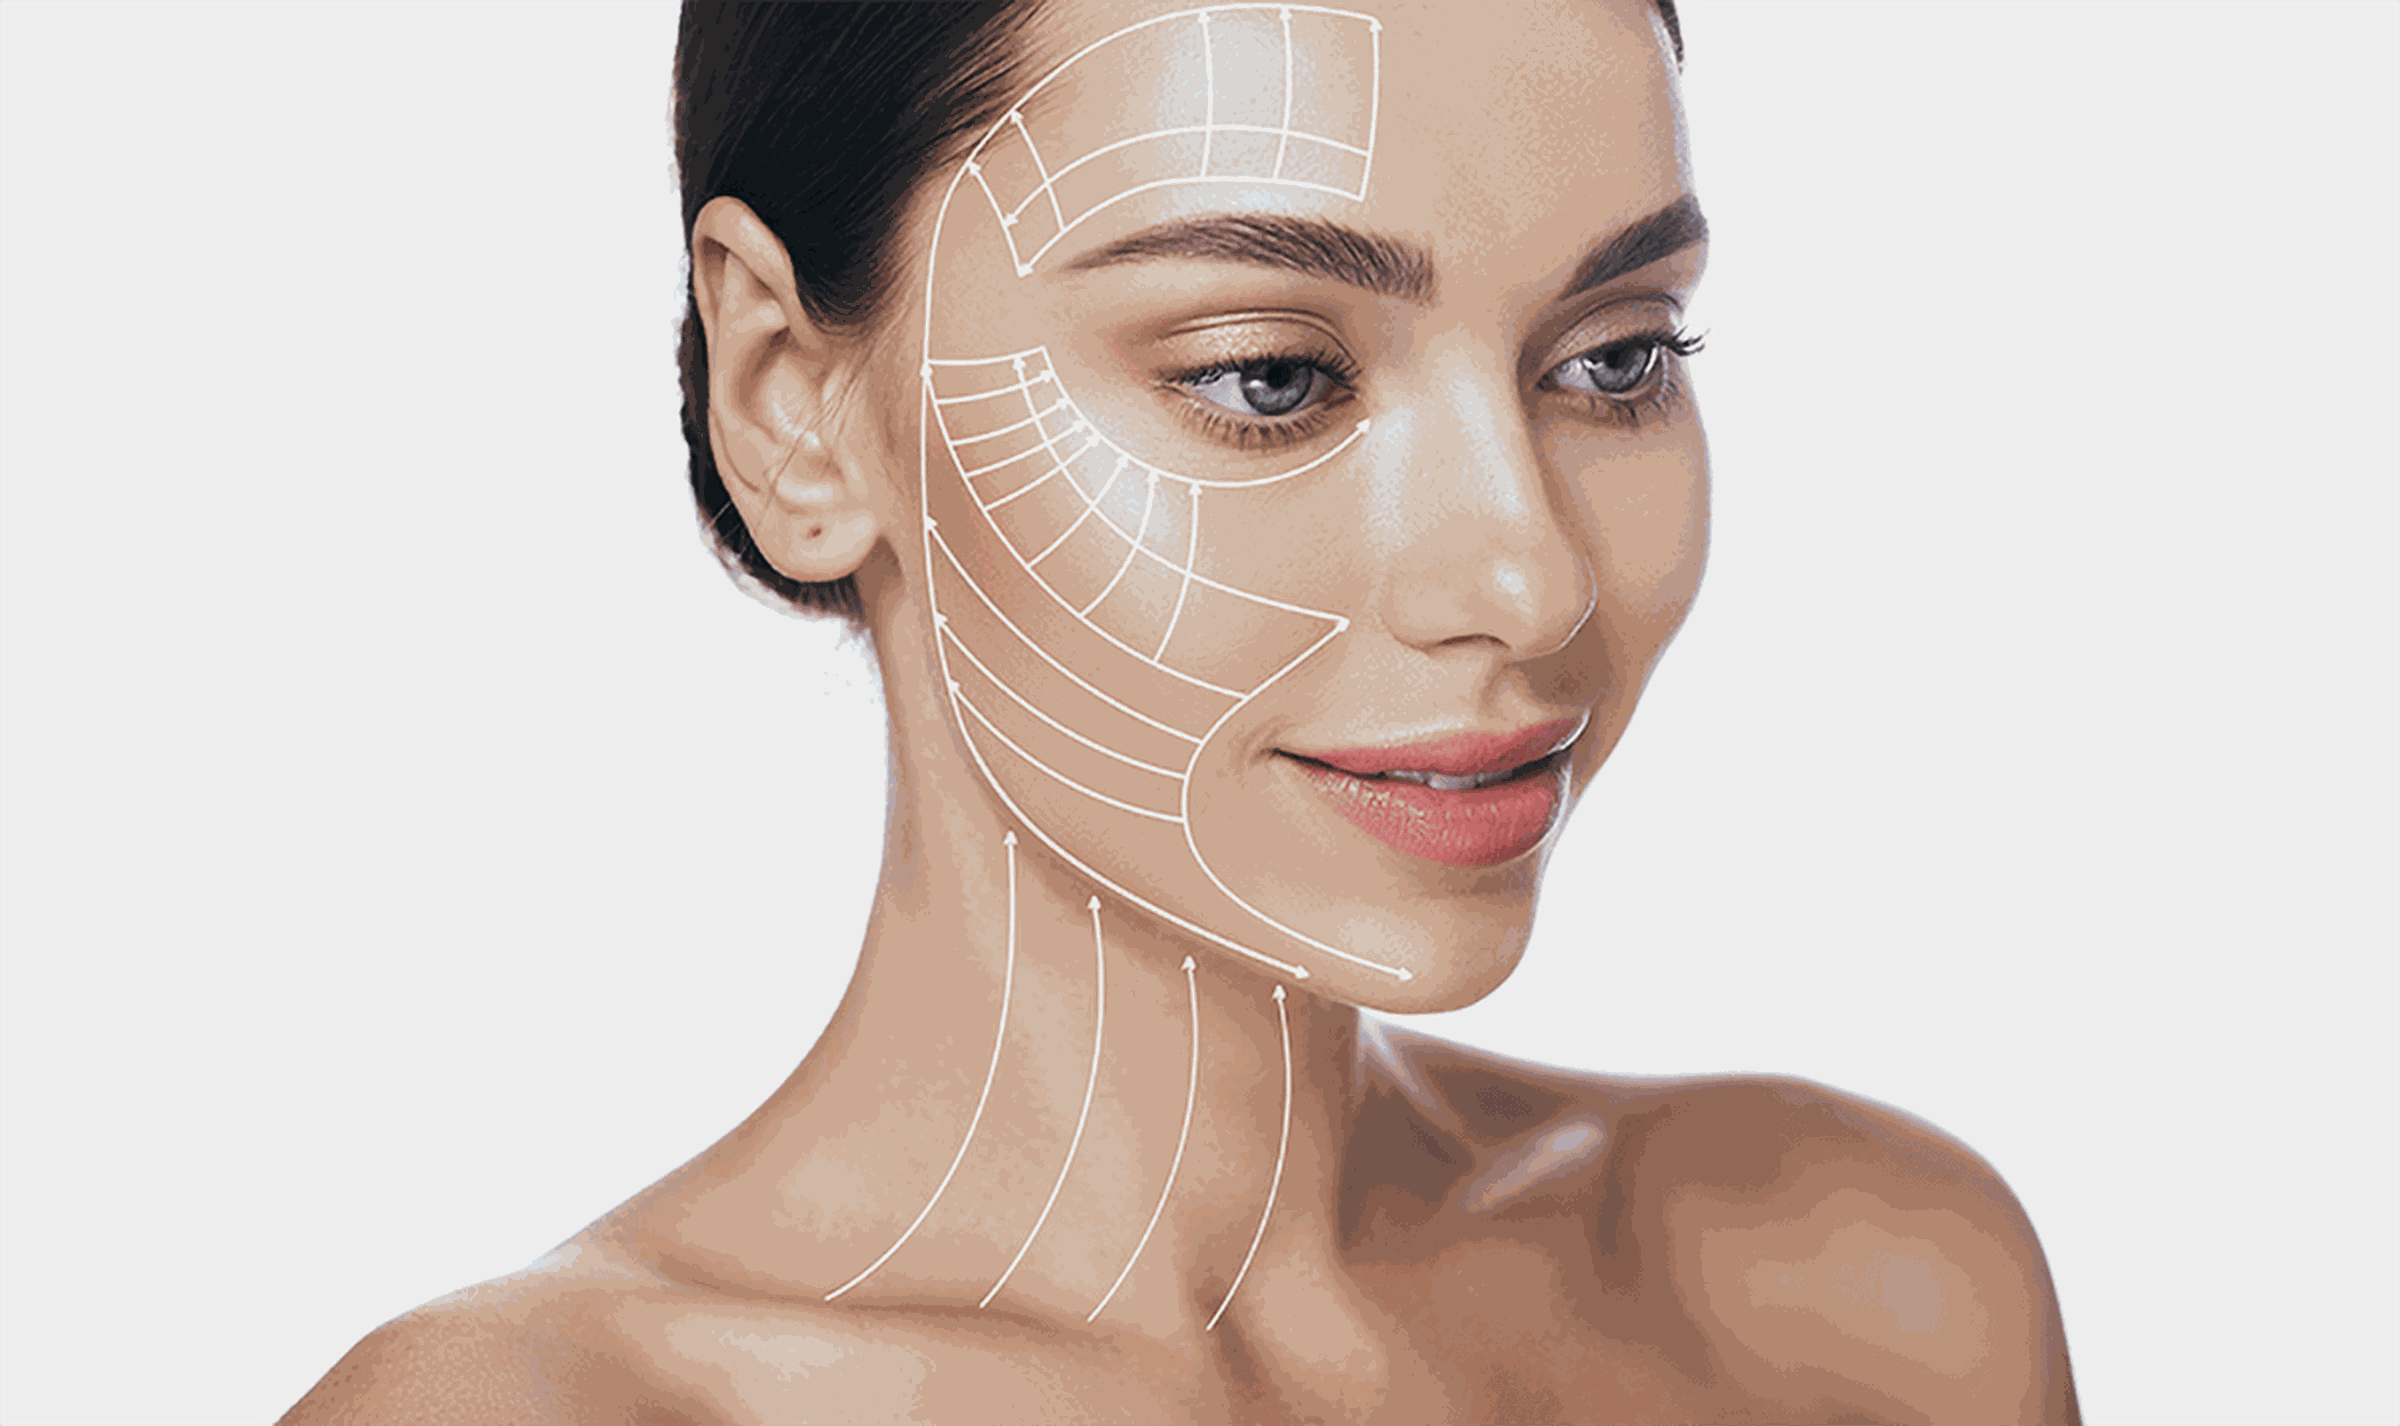 Gesicht einer Frau mit eingezeichnetem Schema zum Facelift